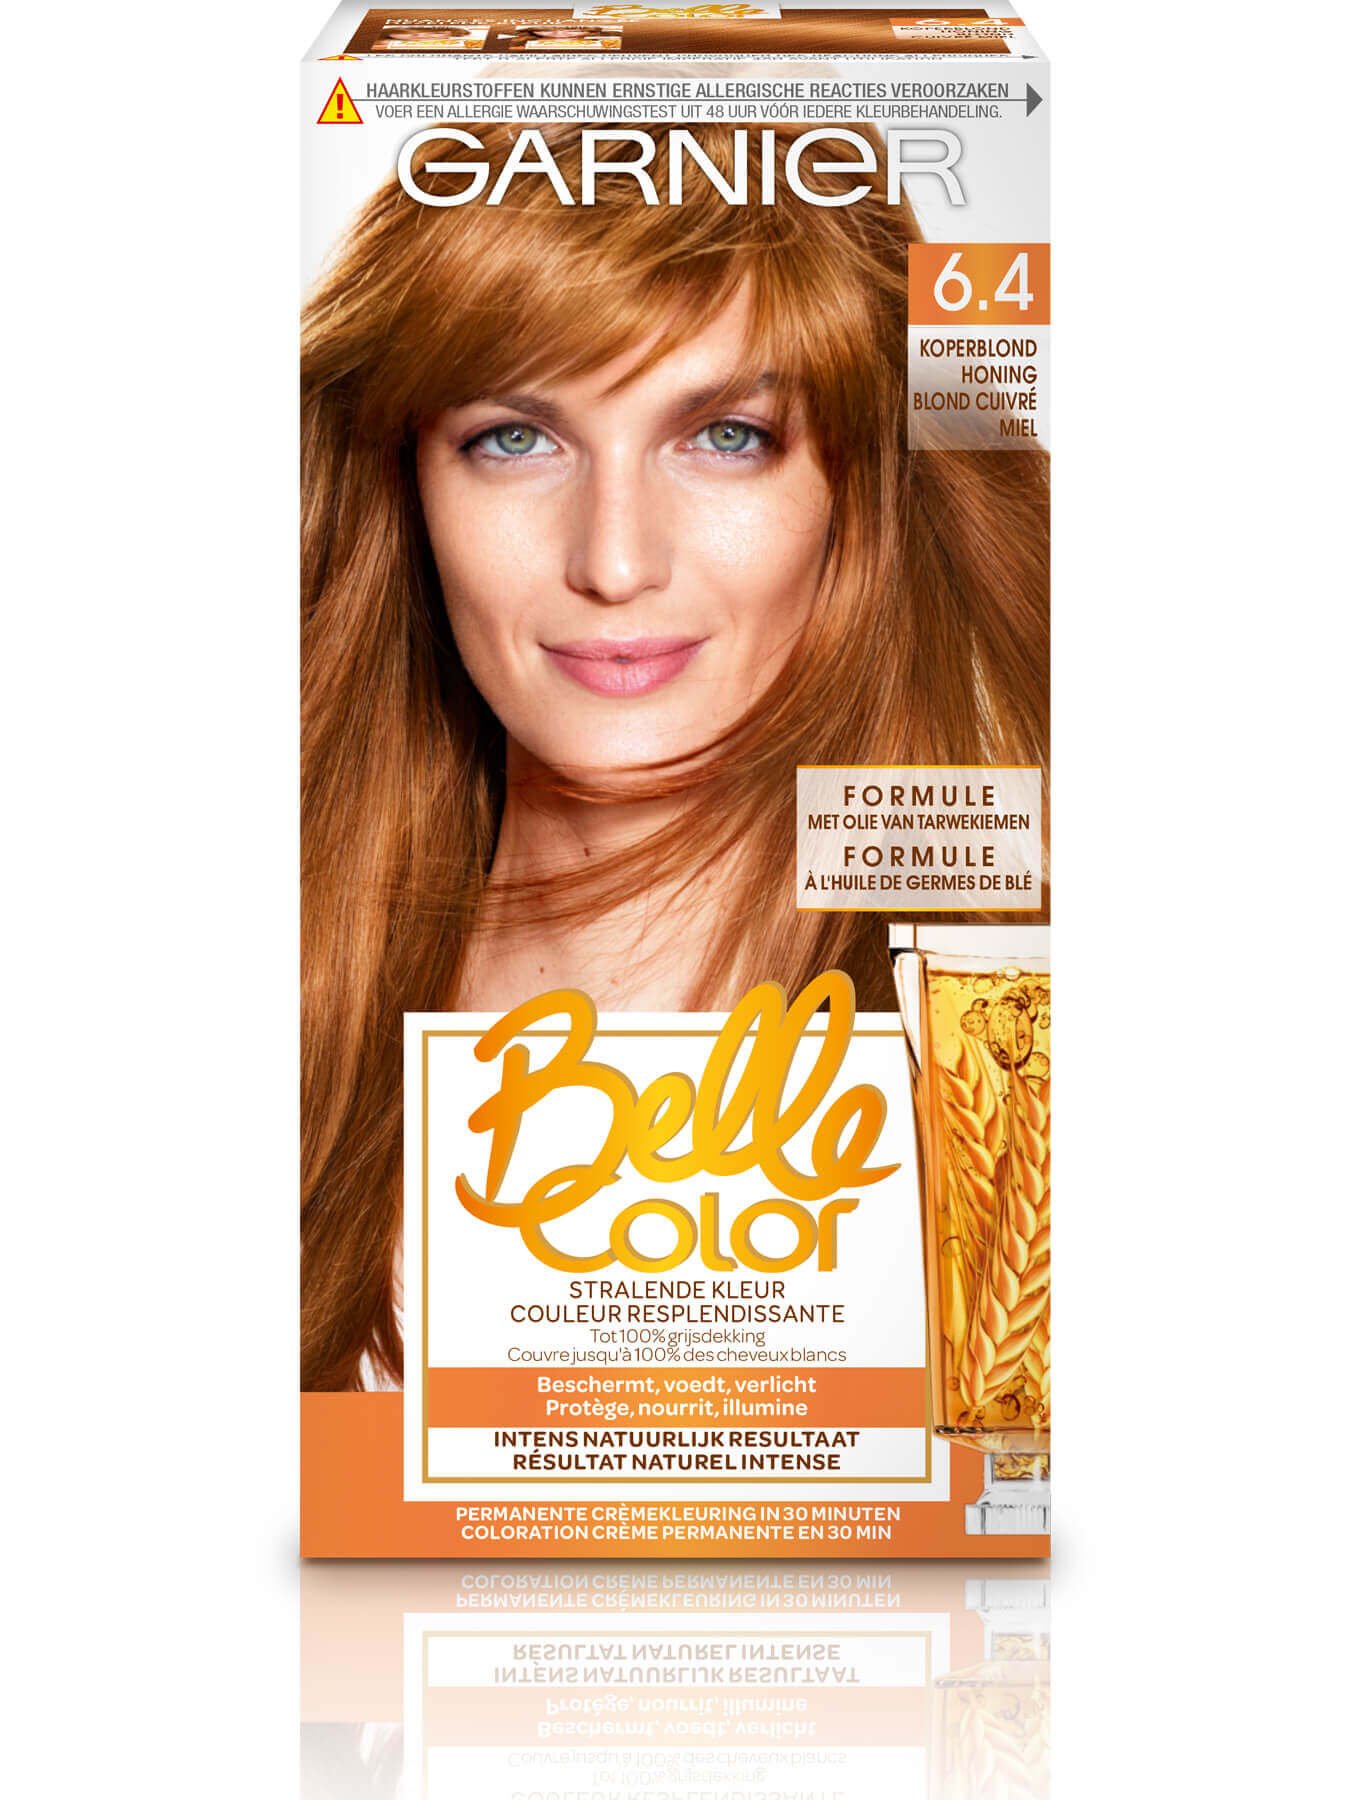 Belle color 2019 face 64BIL